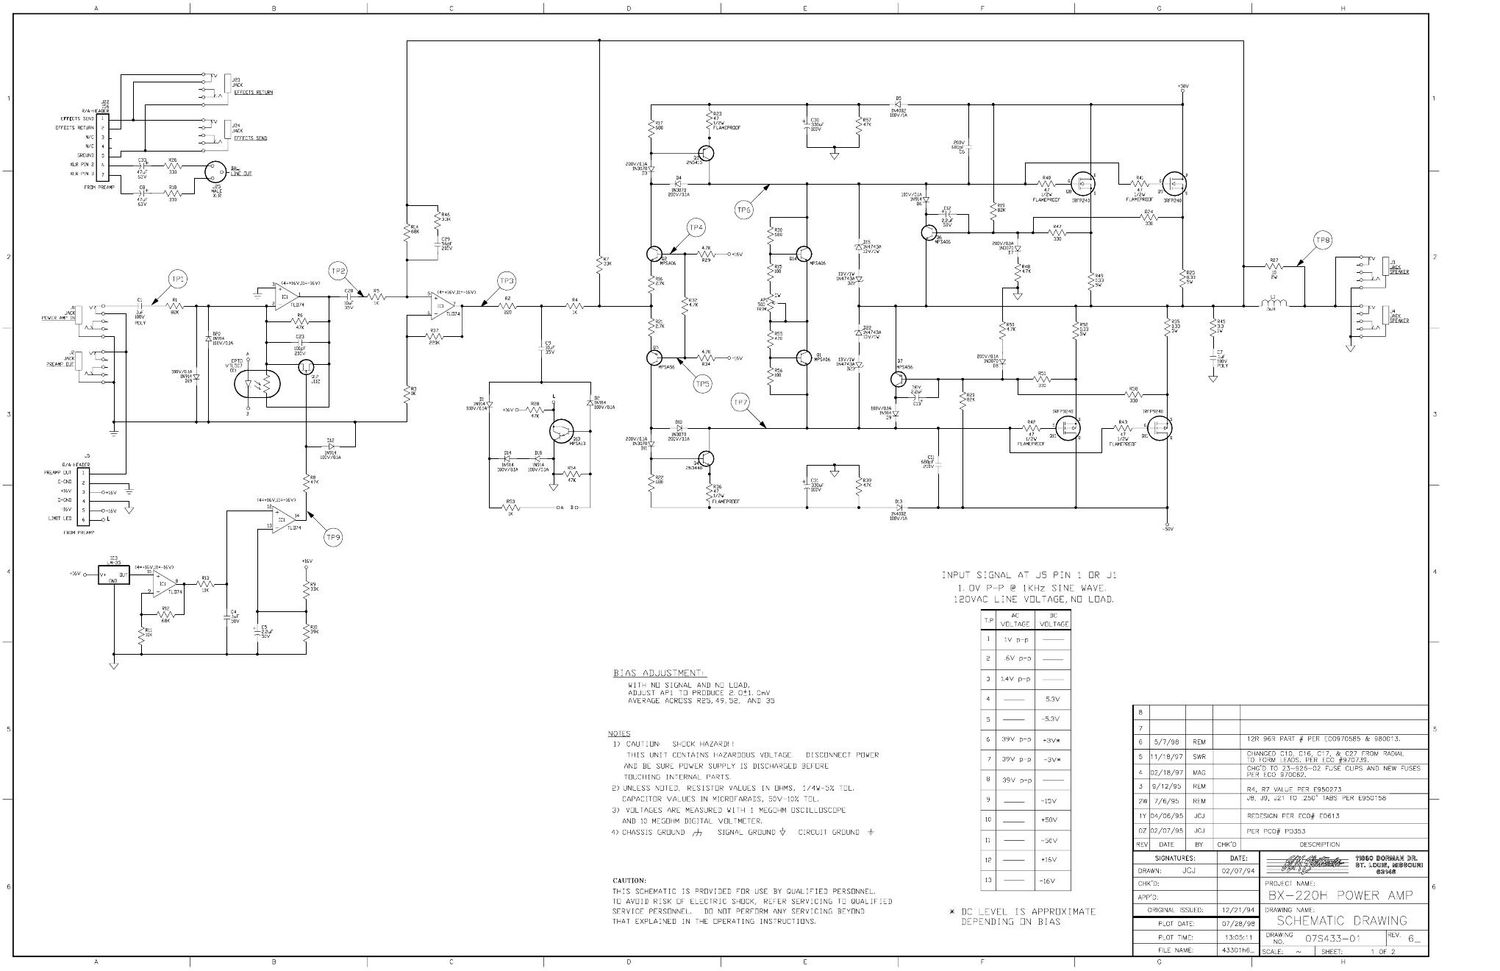 Crate BX 220H Power Amp 07S433 Schematics